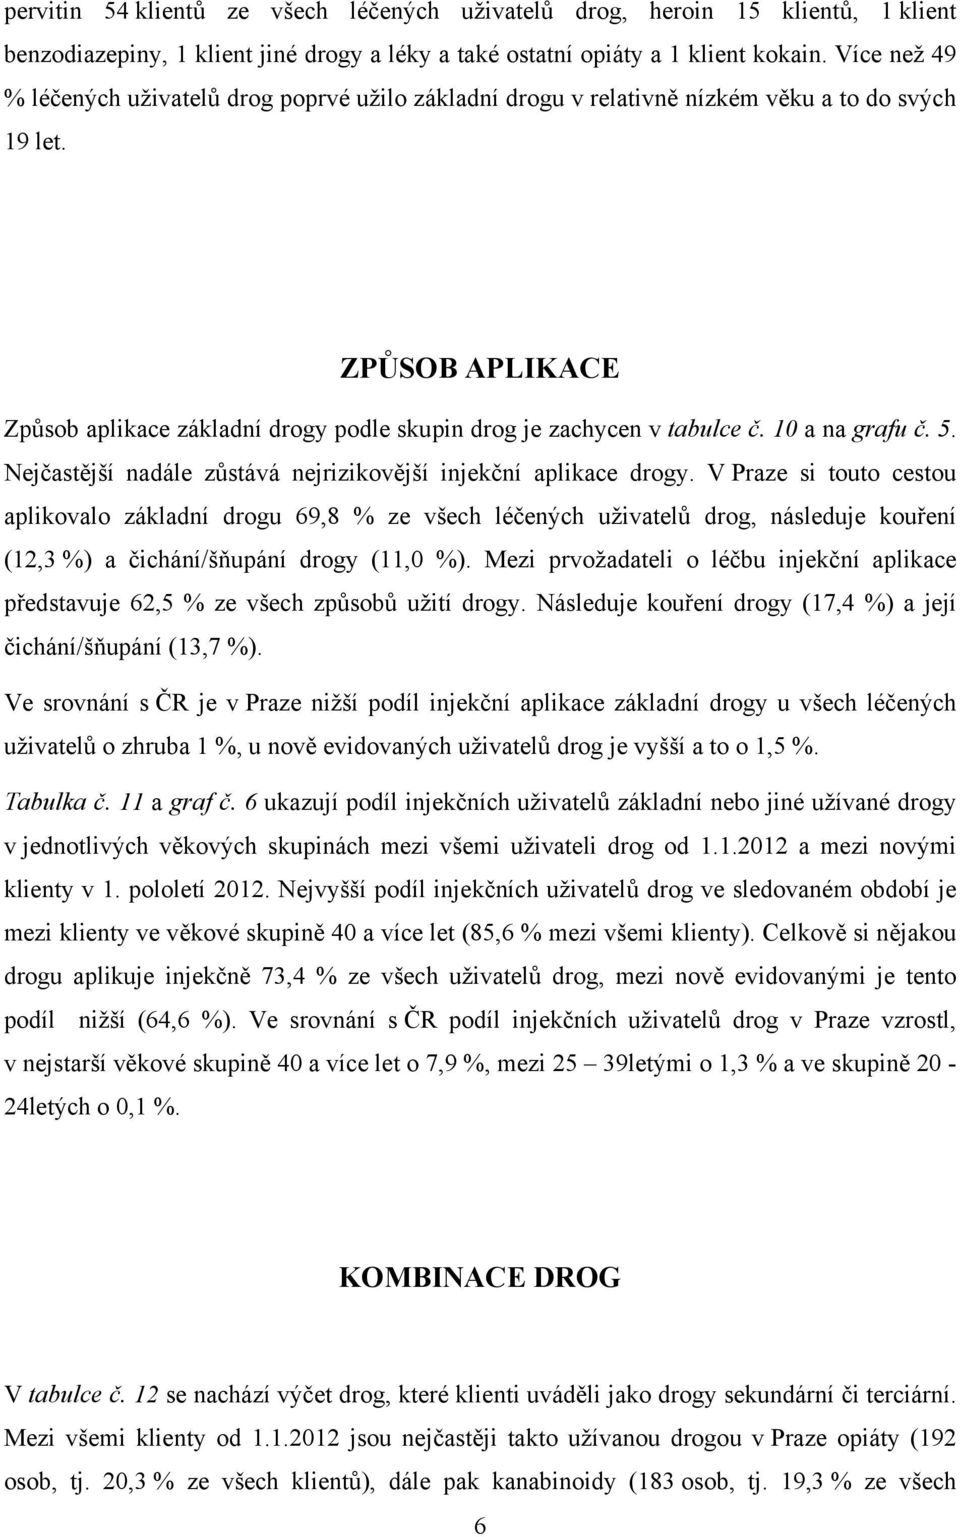 ZPŮSOB APLIKACE Způsob aplikace základní drogy podle skupin drog je zachycen v tabulce č. 10 a na grafu č. 5. Nejčastější nadále zůstává nejrizikovější injekční aplikace drogy.